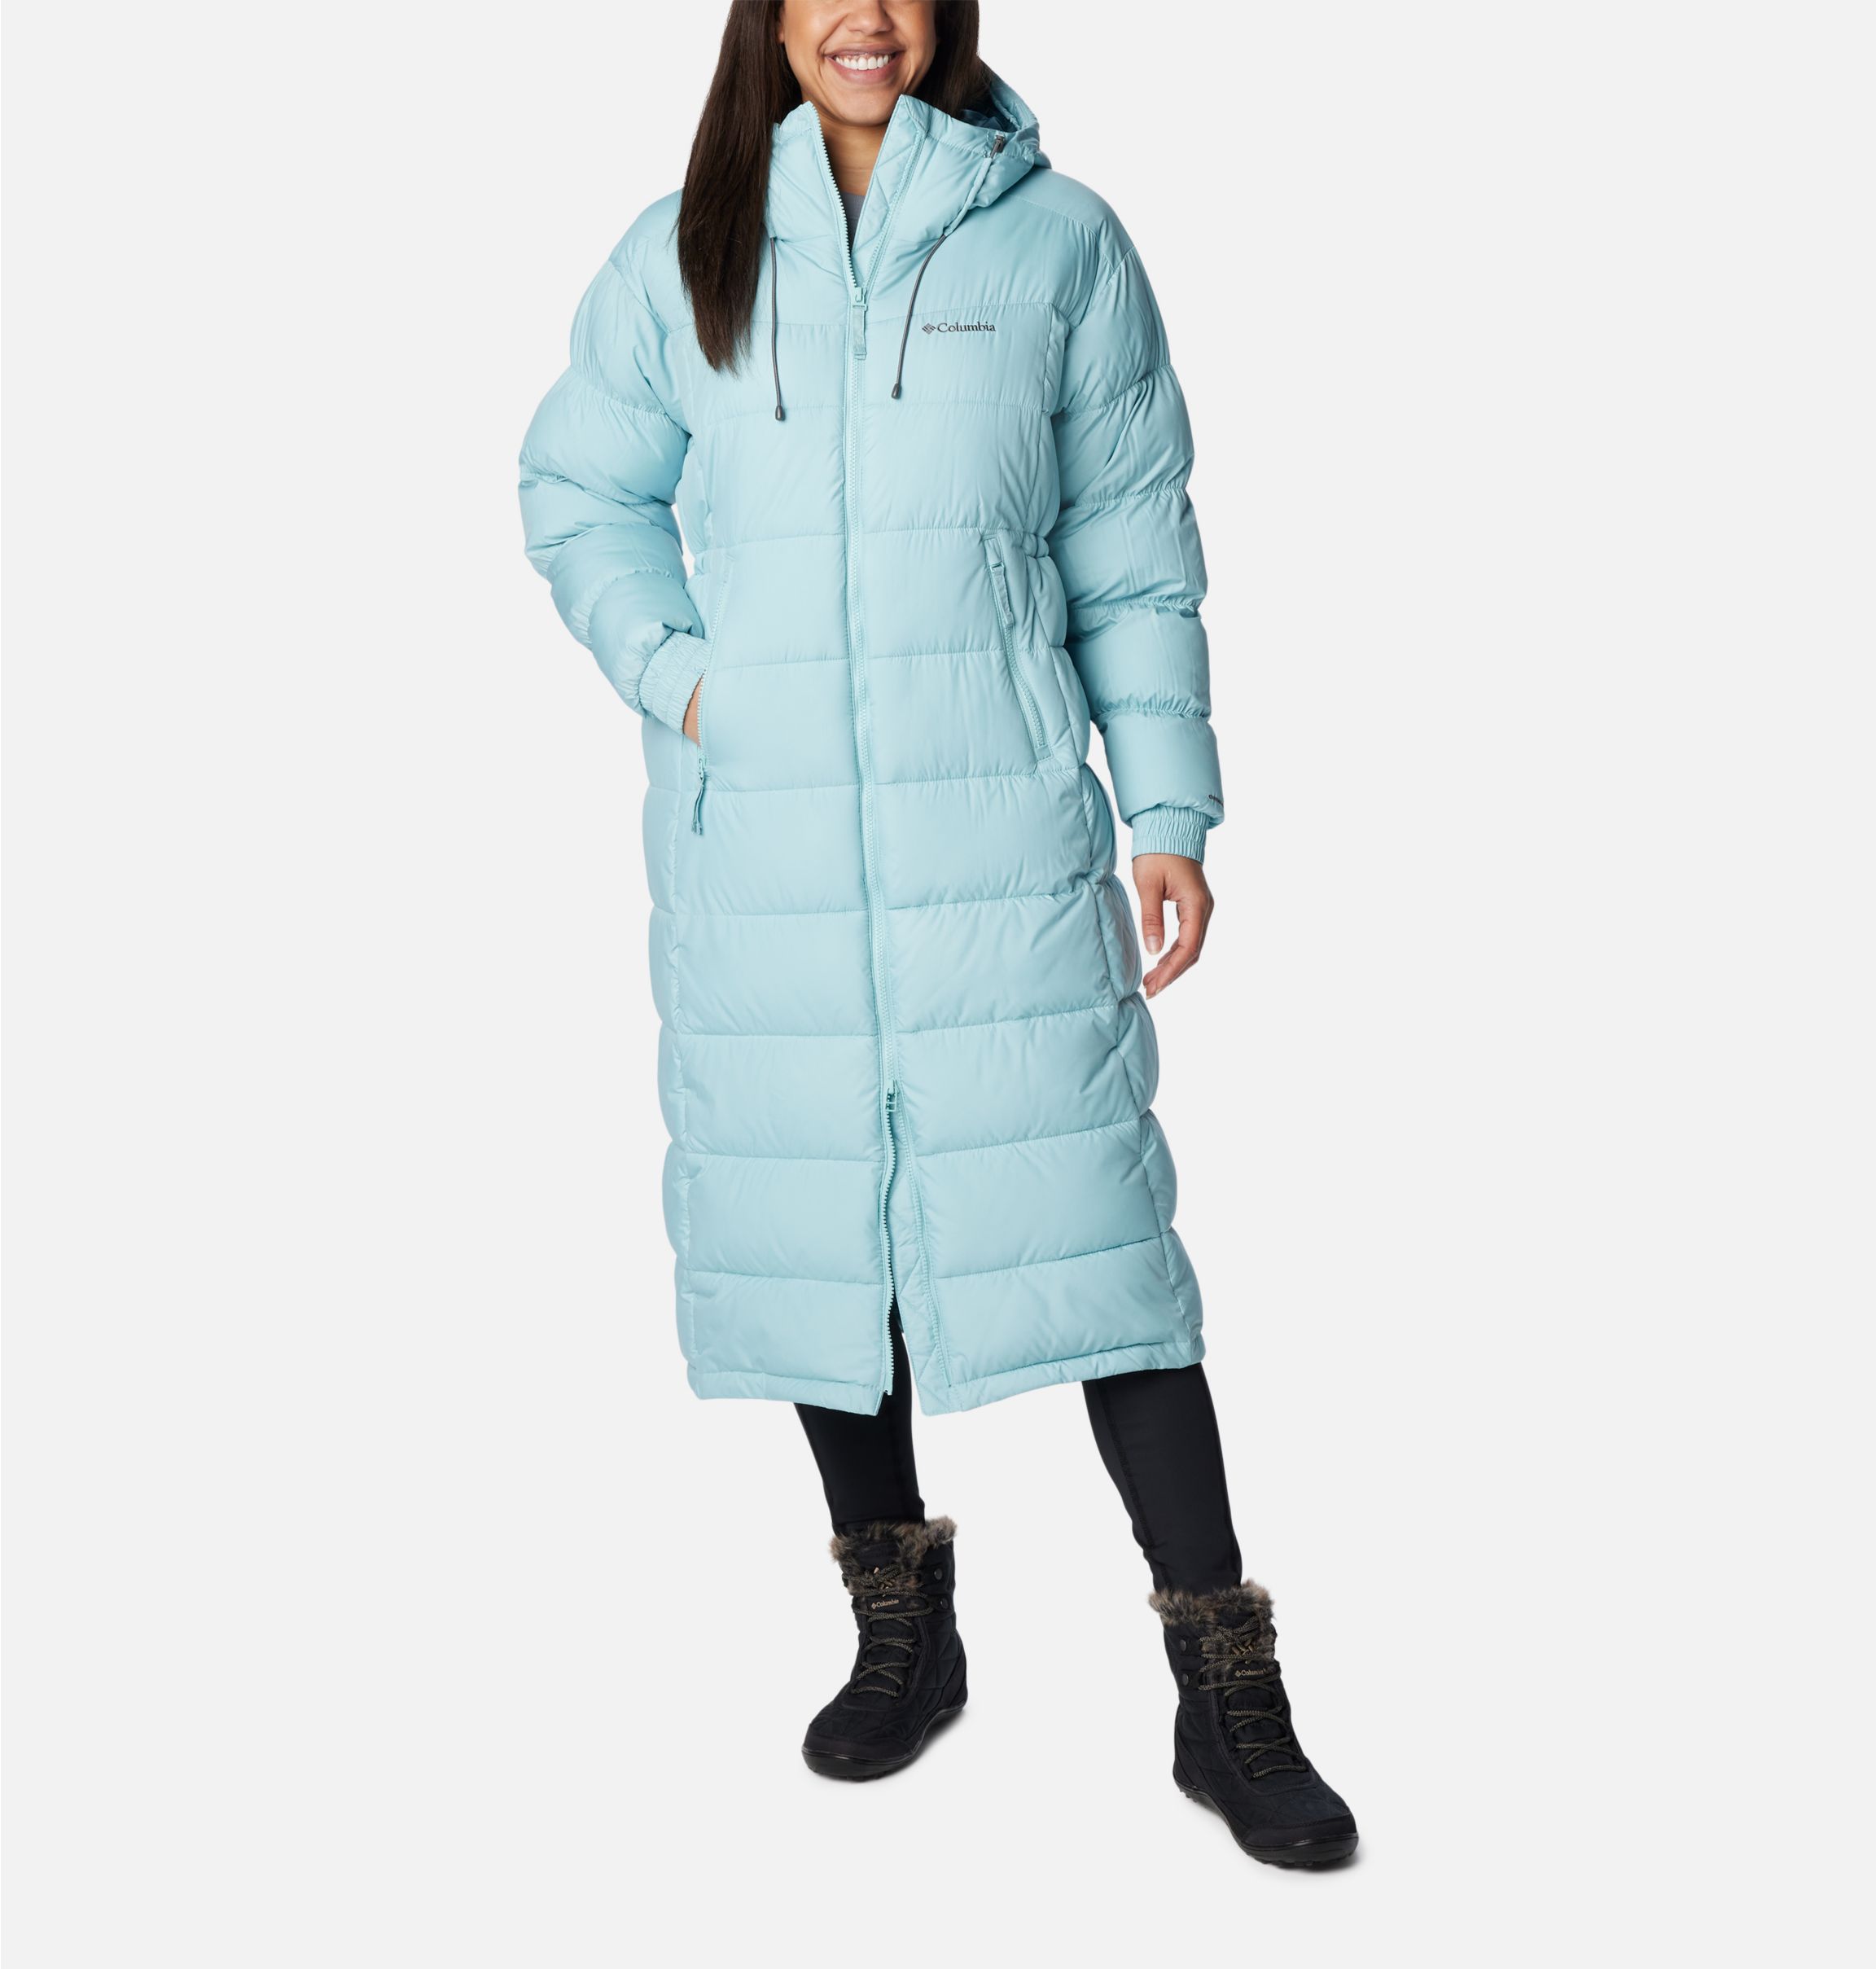 Pike Lake II Long Winter Jacket - Women’s - Plus Size